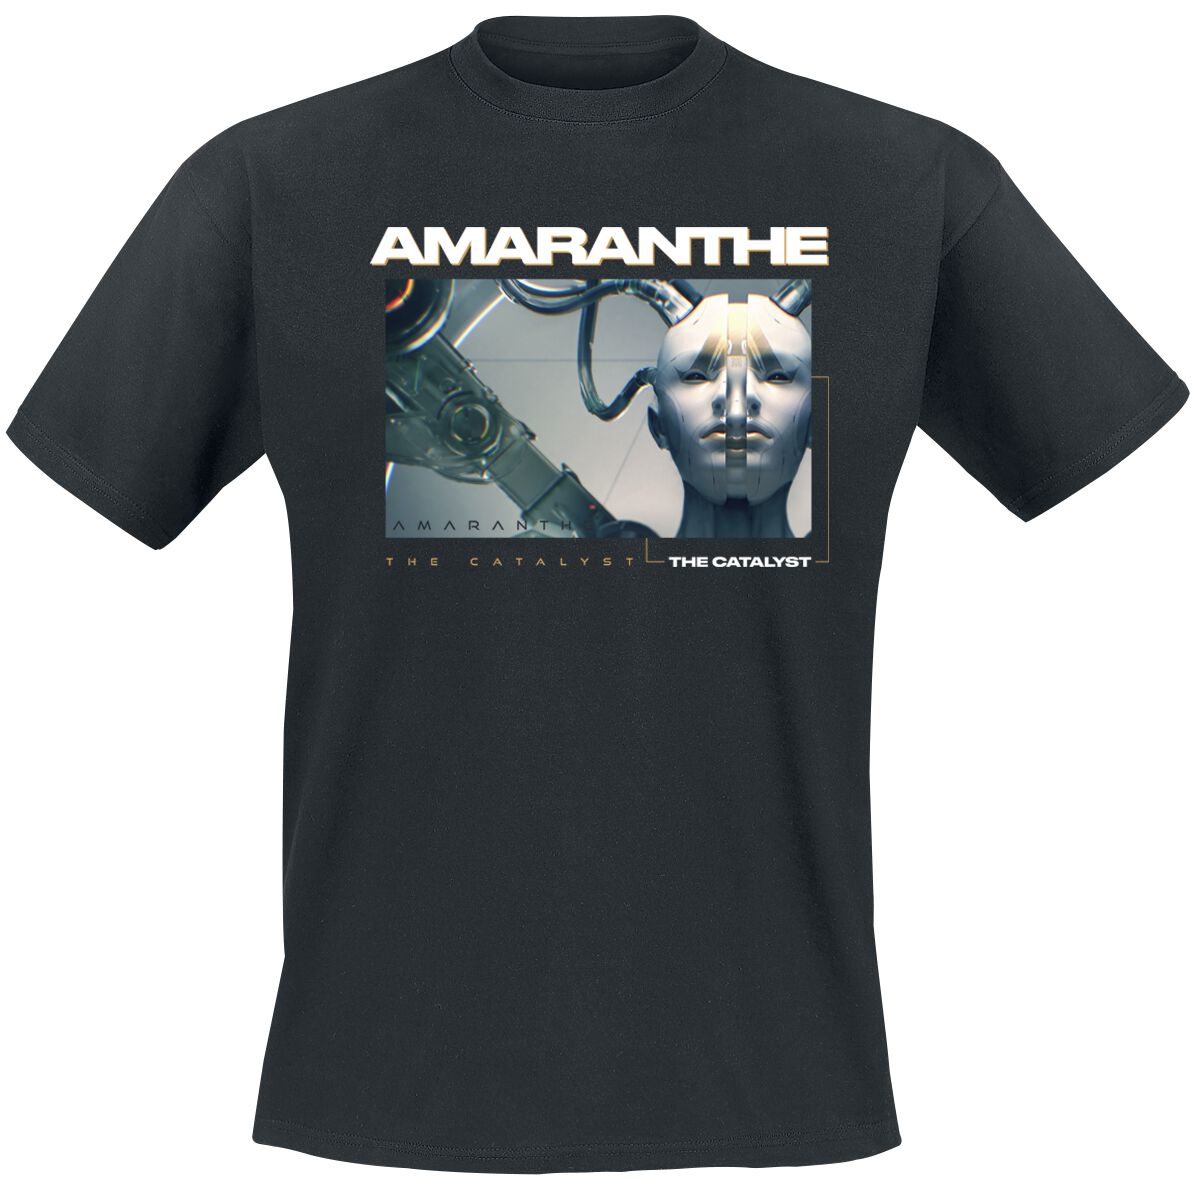 Amaranthe T-Shirt - The Catalyst Cut - S bis 3XL - für Männer - Größe L - schwarz  - Lizenziertes Merchandise!